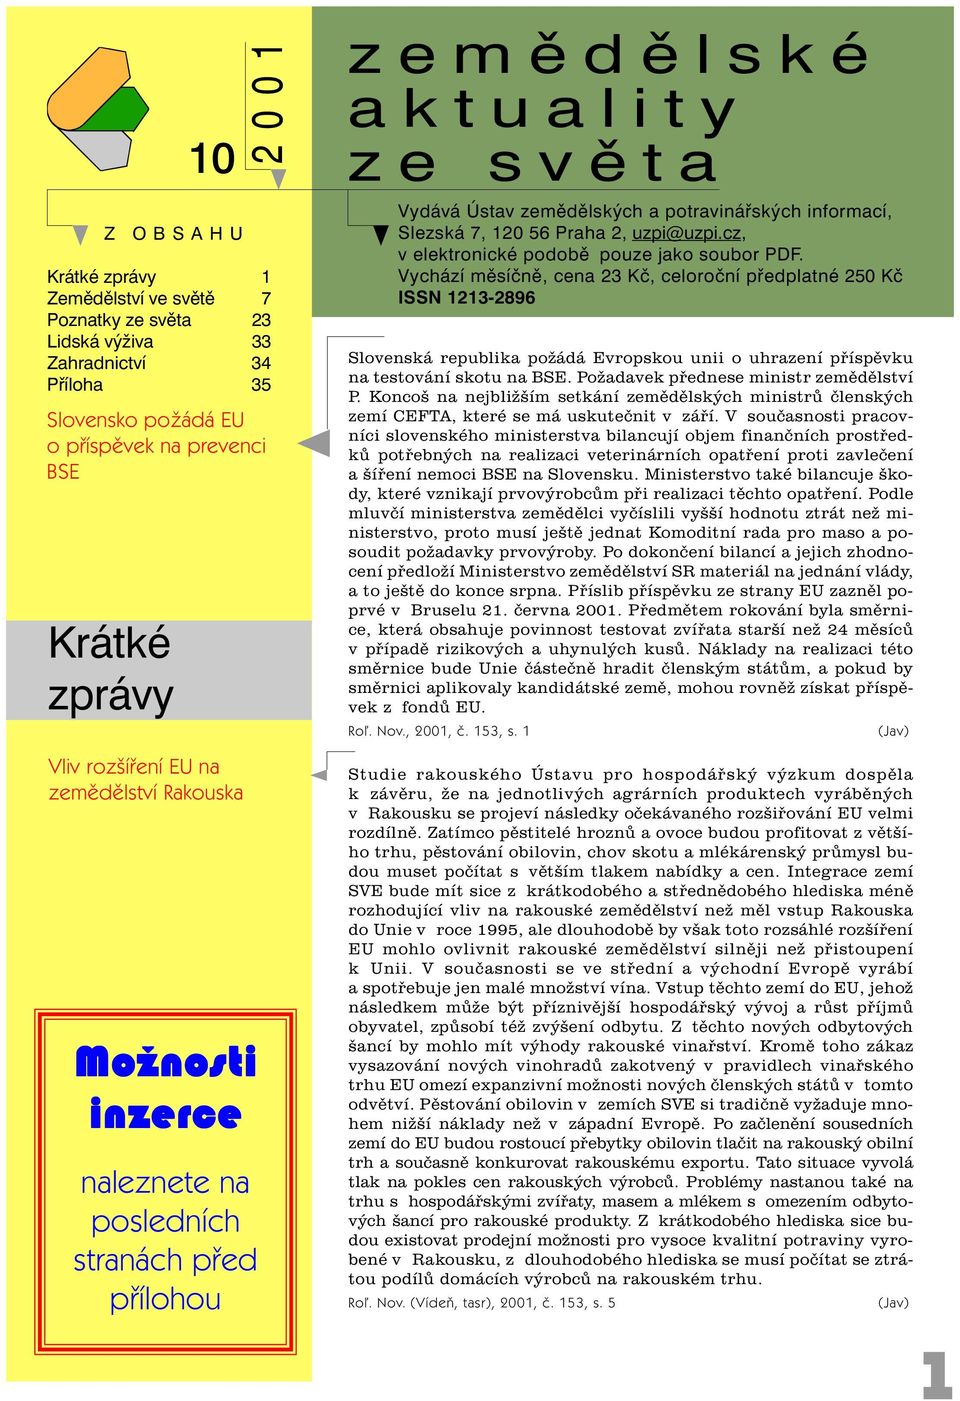 uzpi@uzpi.cz, v elektronické podobì pouze jako soubor PDF.